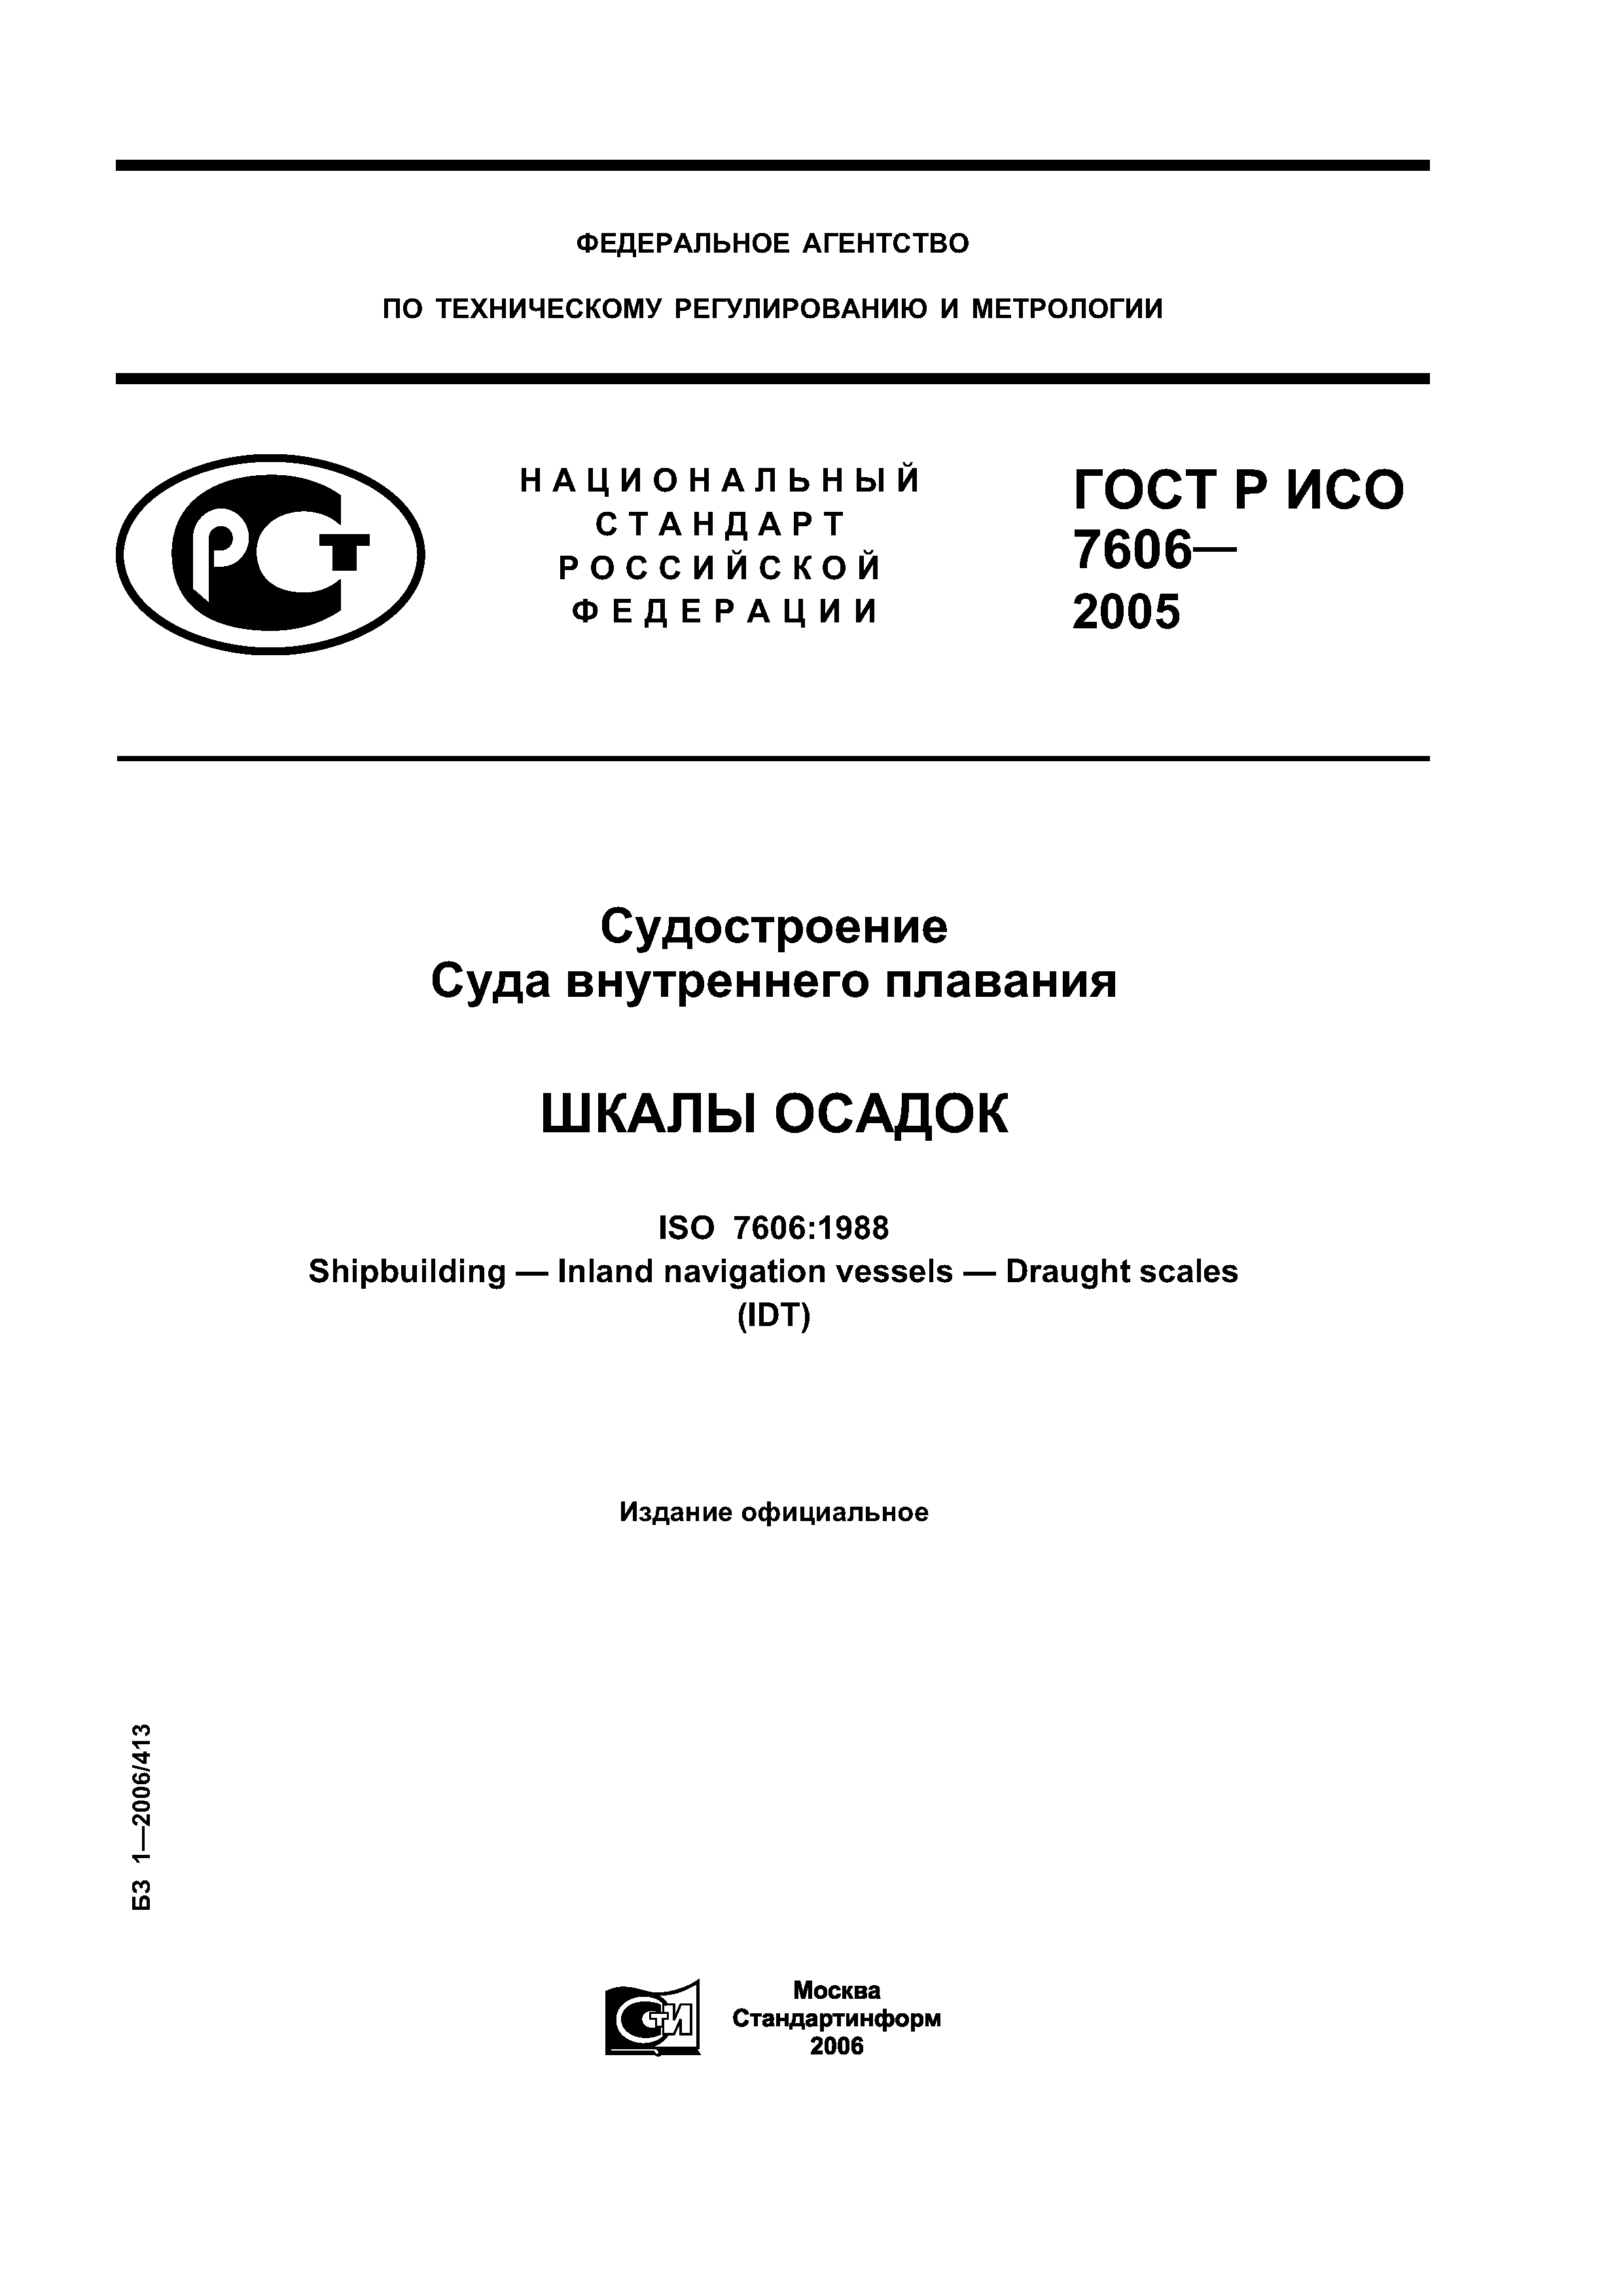 ГОСТ Р ИСО 7606-2005